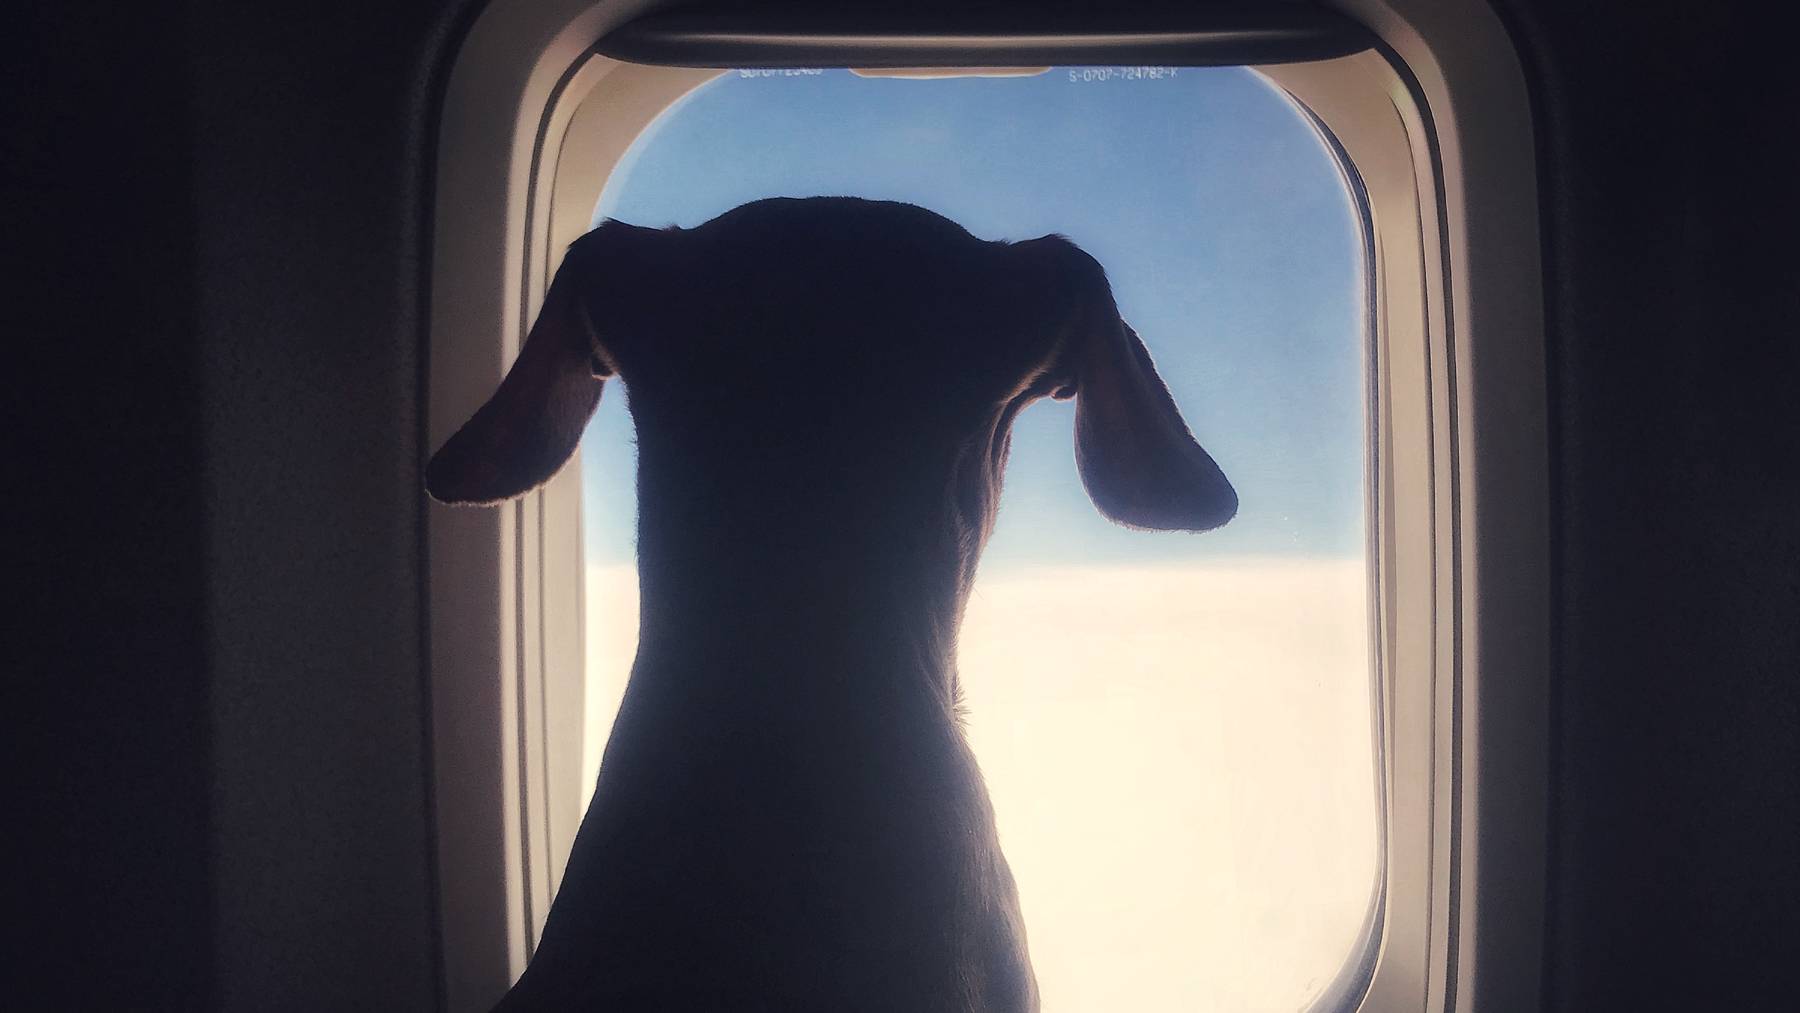 Bei der Hunde-Airline sollen die Vierbeiner diese Aussicht geniessen können. (Symbolbild)